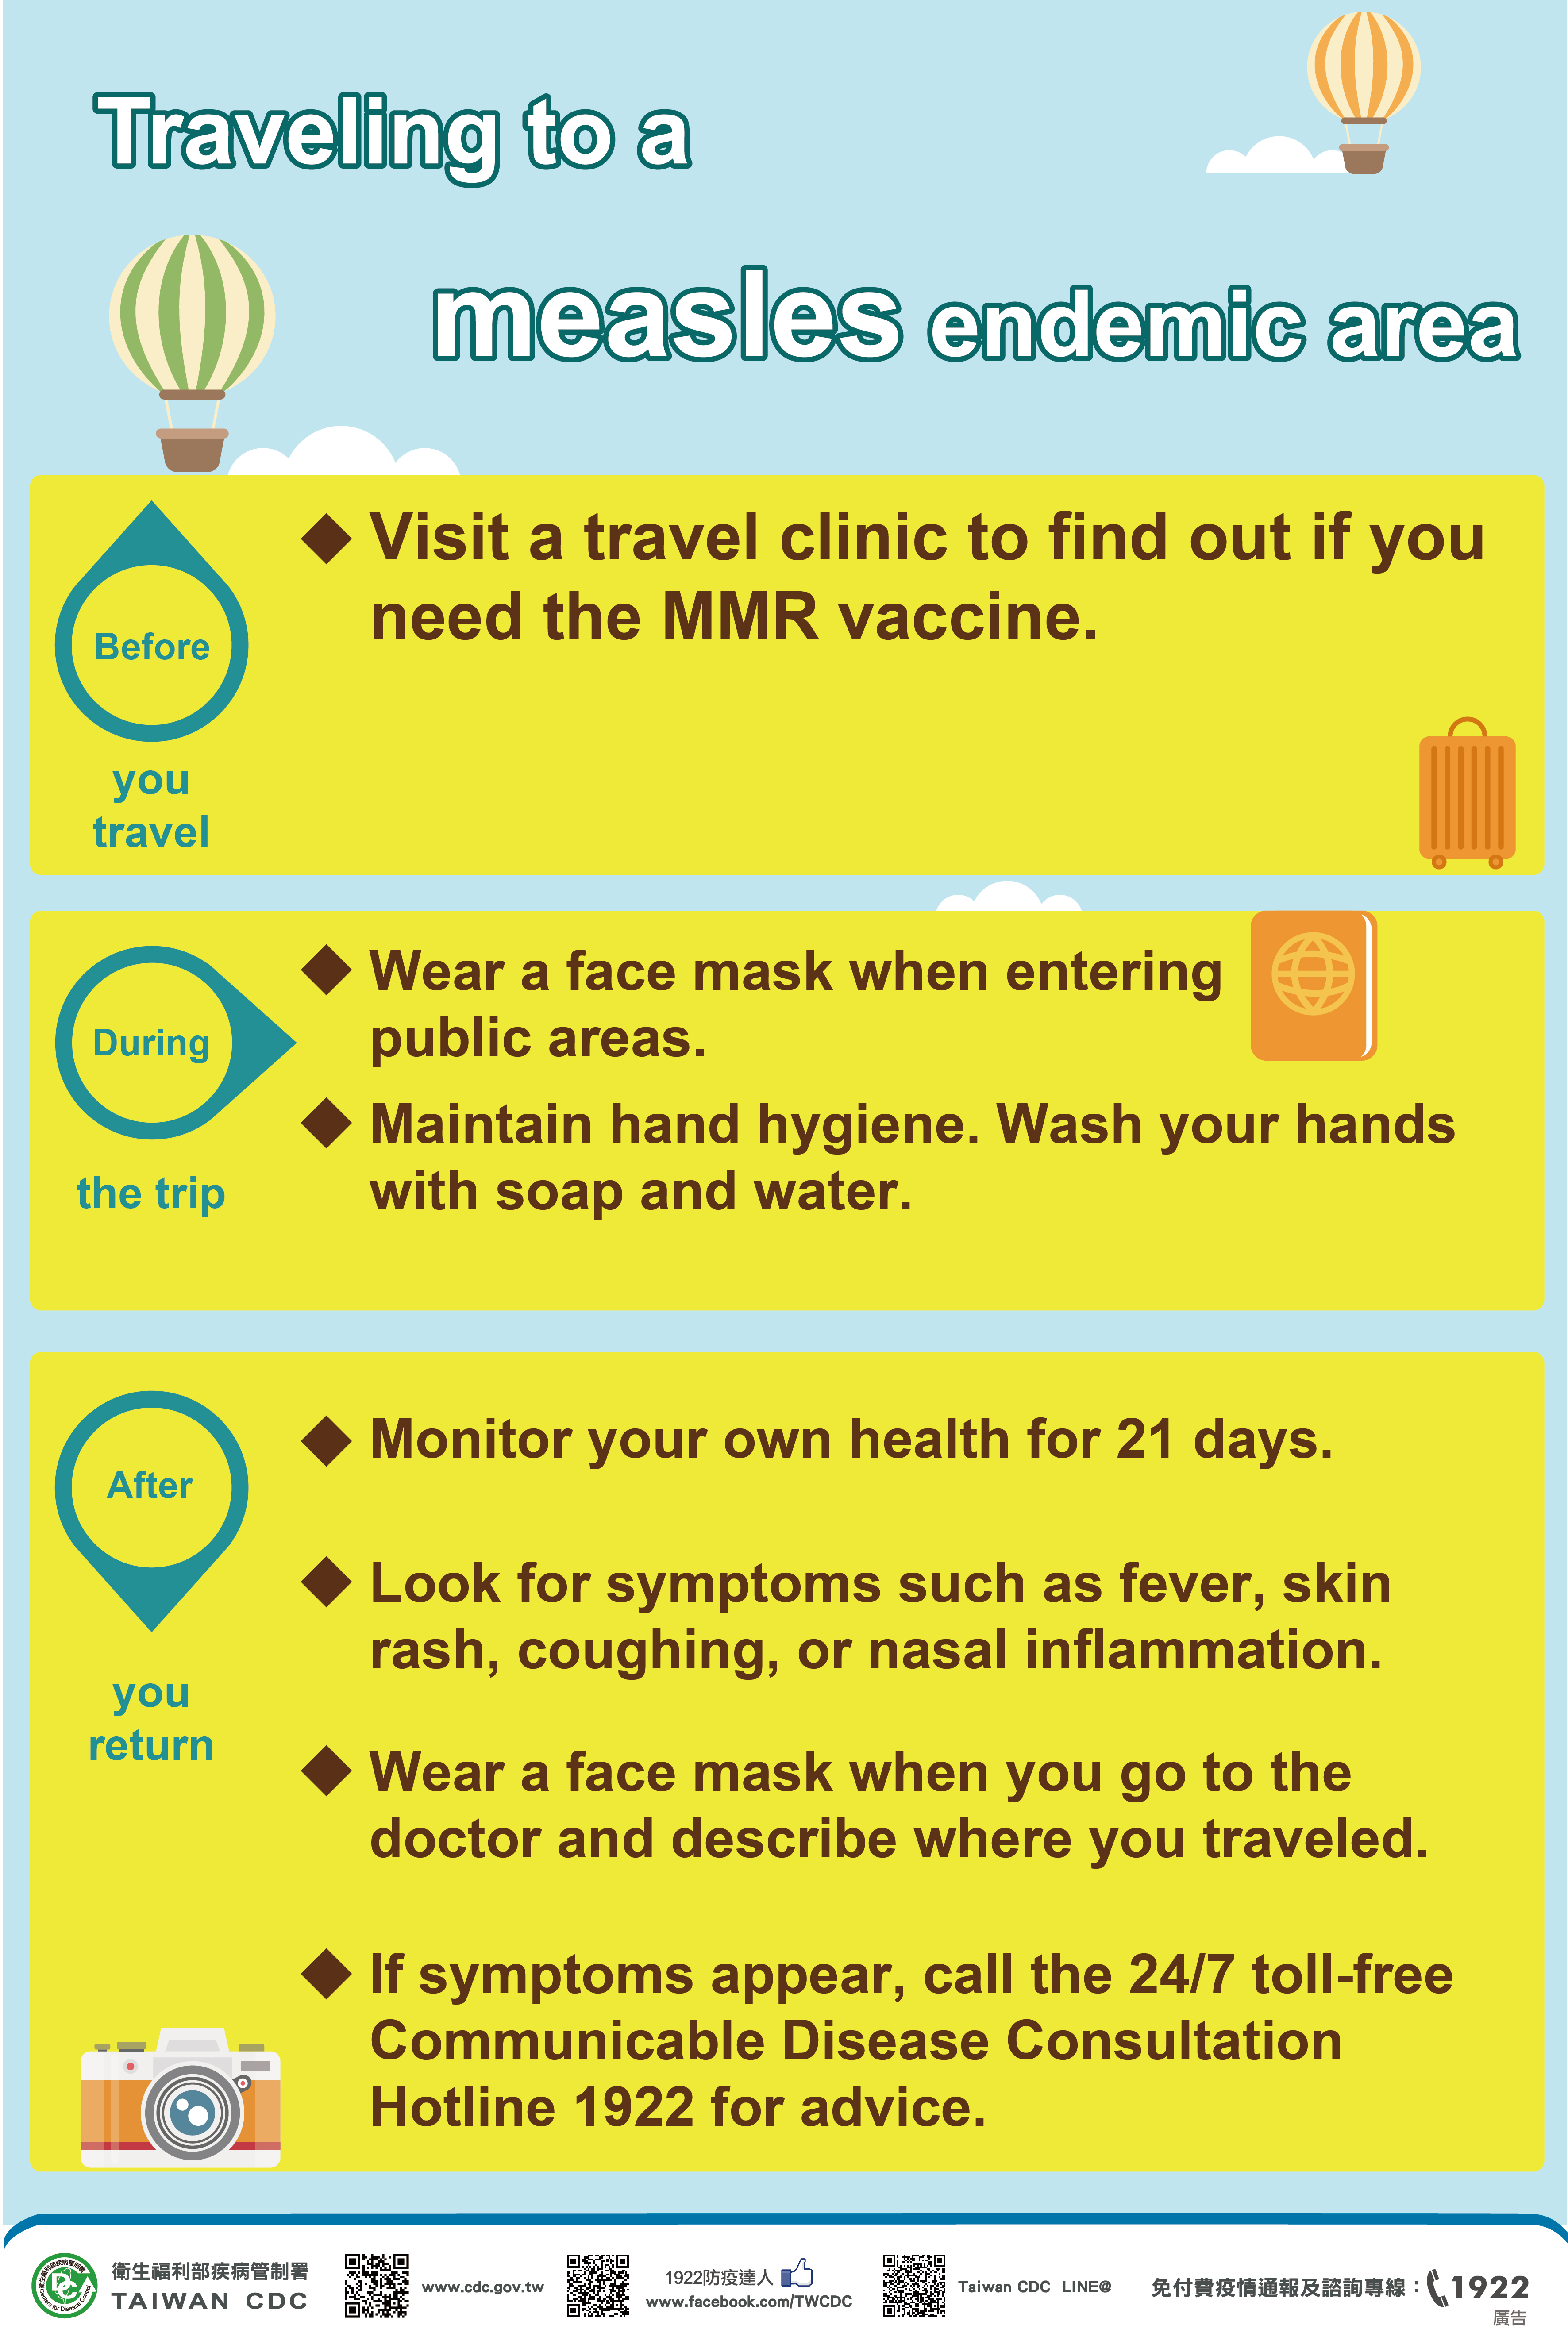 詳如附件【Click me】Traveling to a measles endemic area前往麻疹流行地區出國應注意（英文）